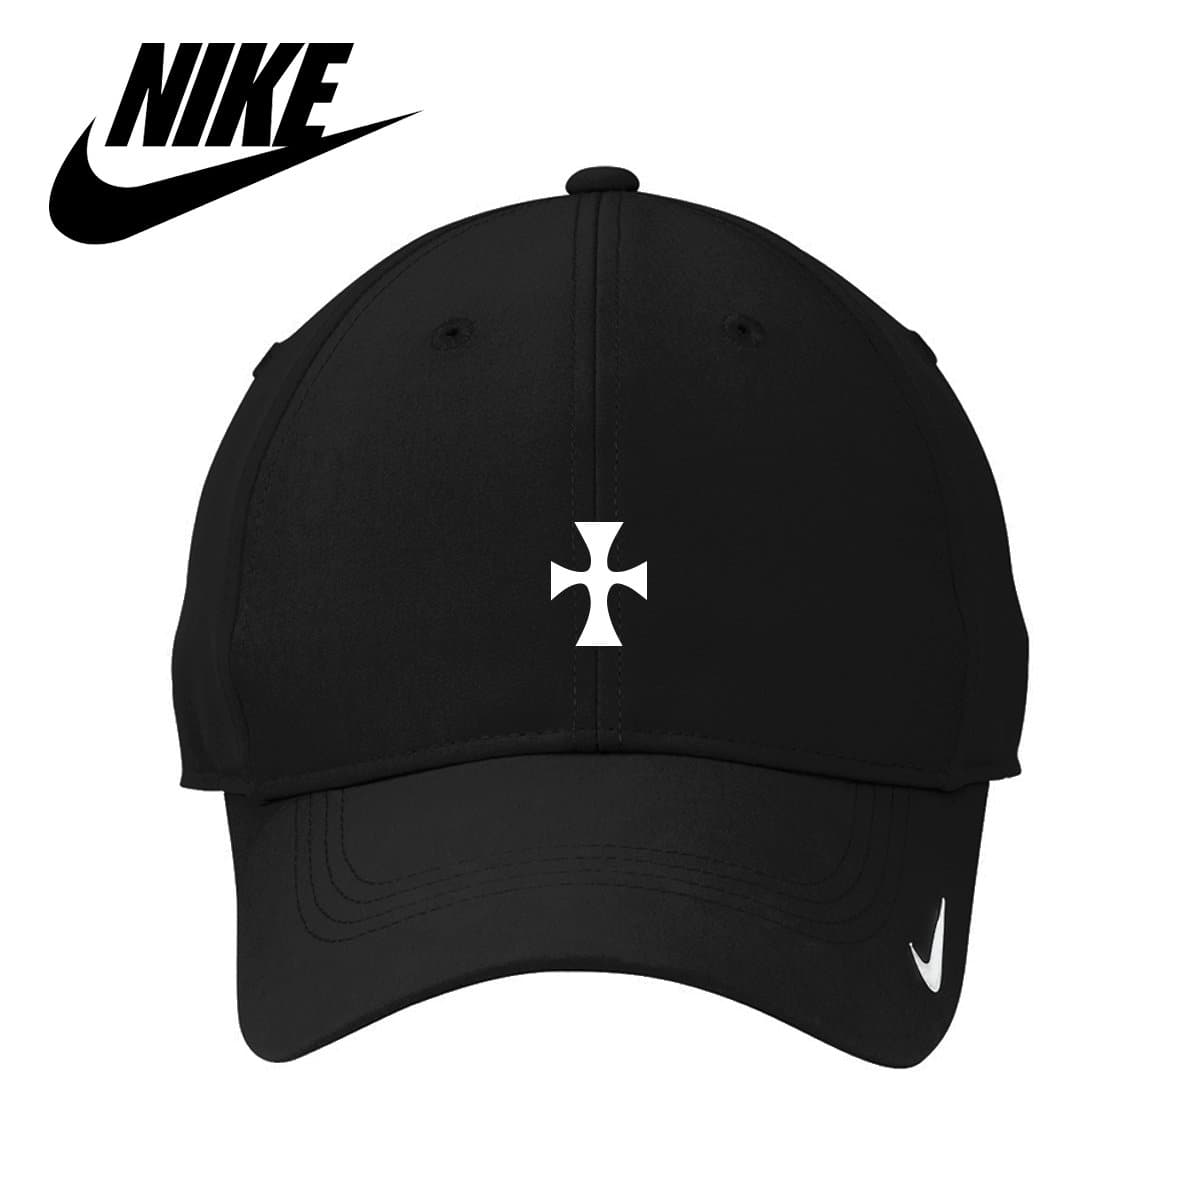 Nike Campus Cap - Goat - Black